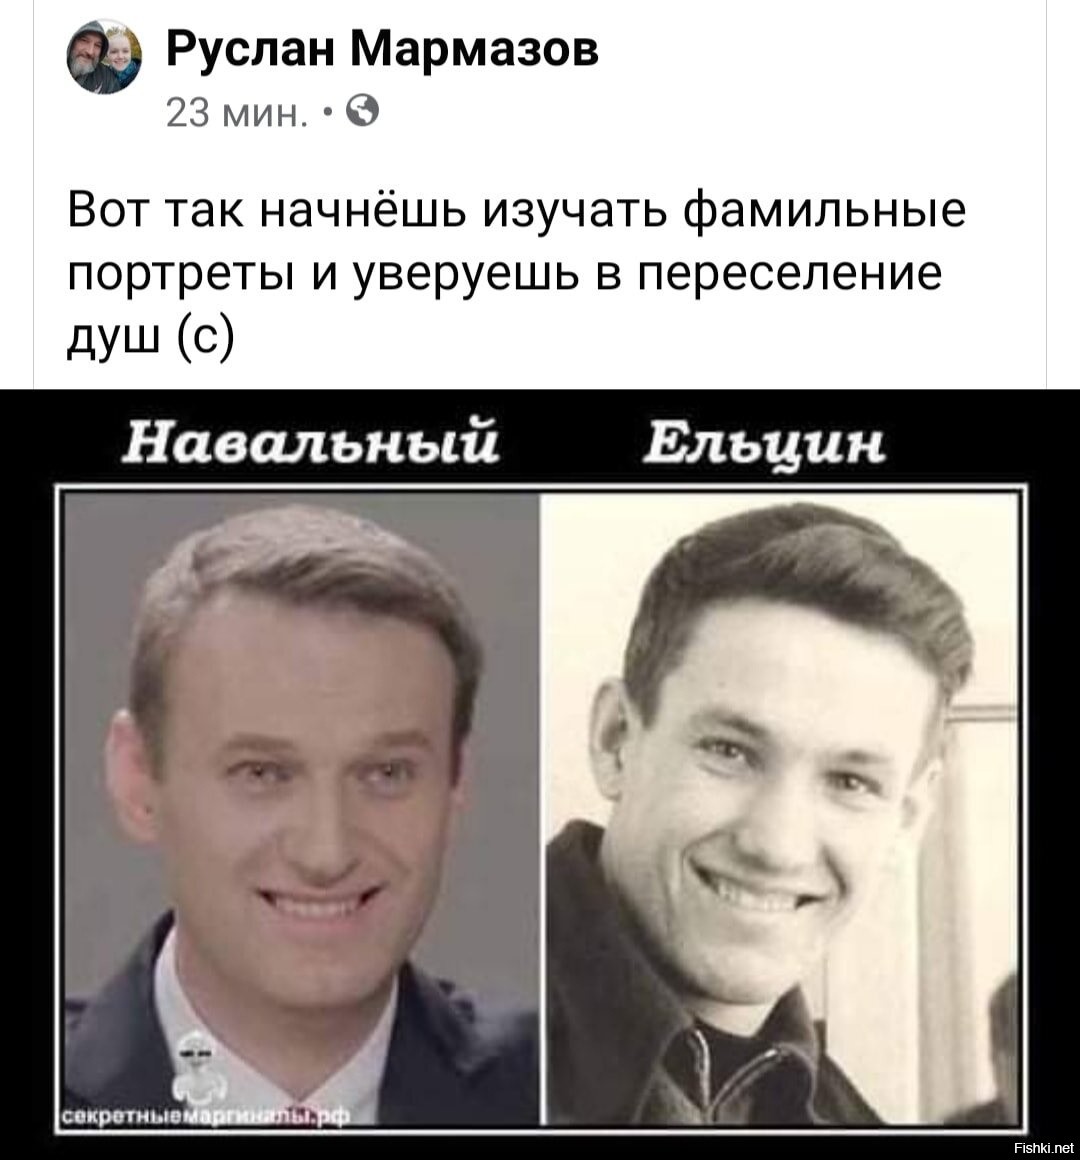 Навальный Ельцин